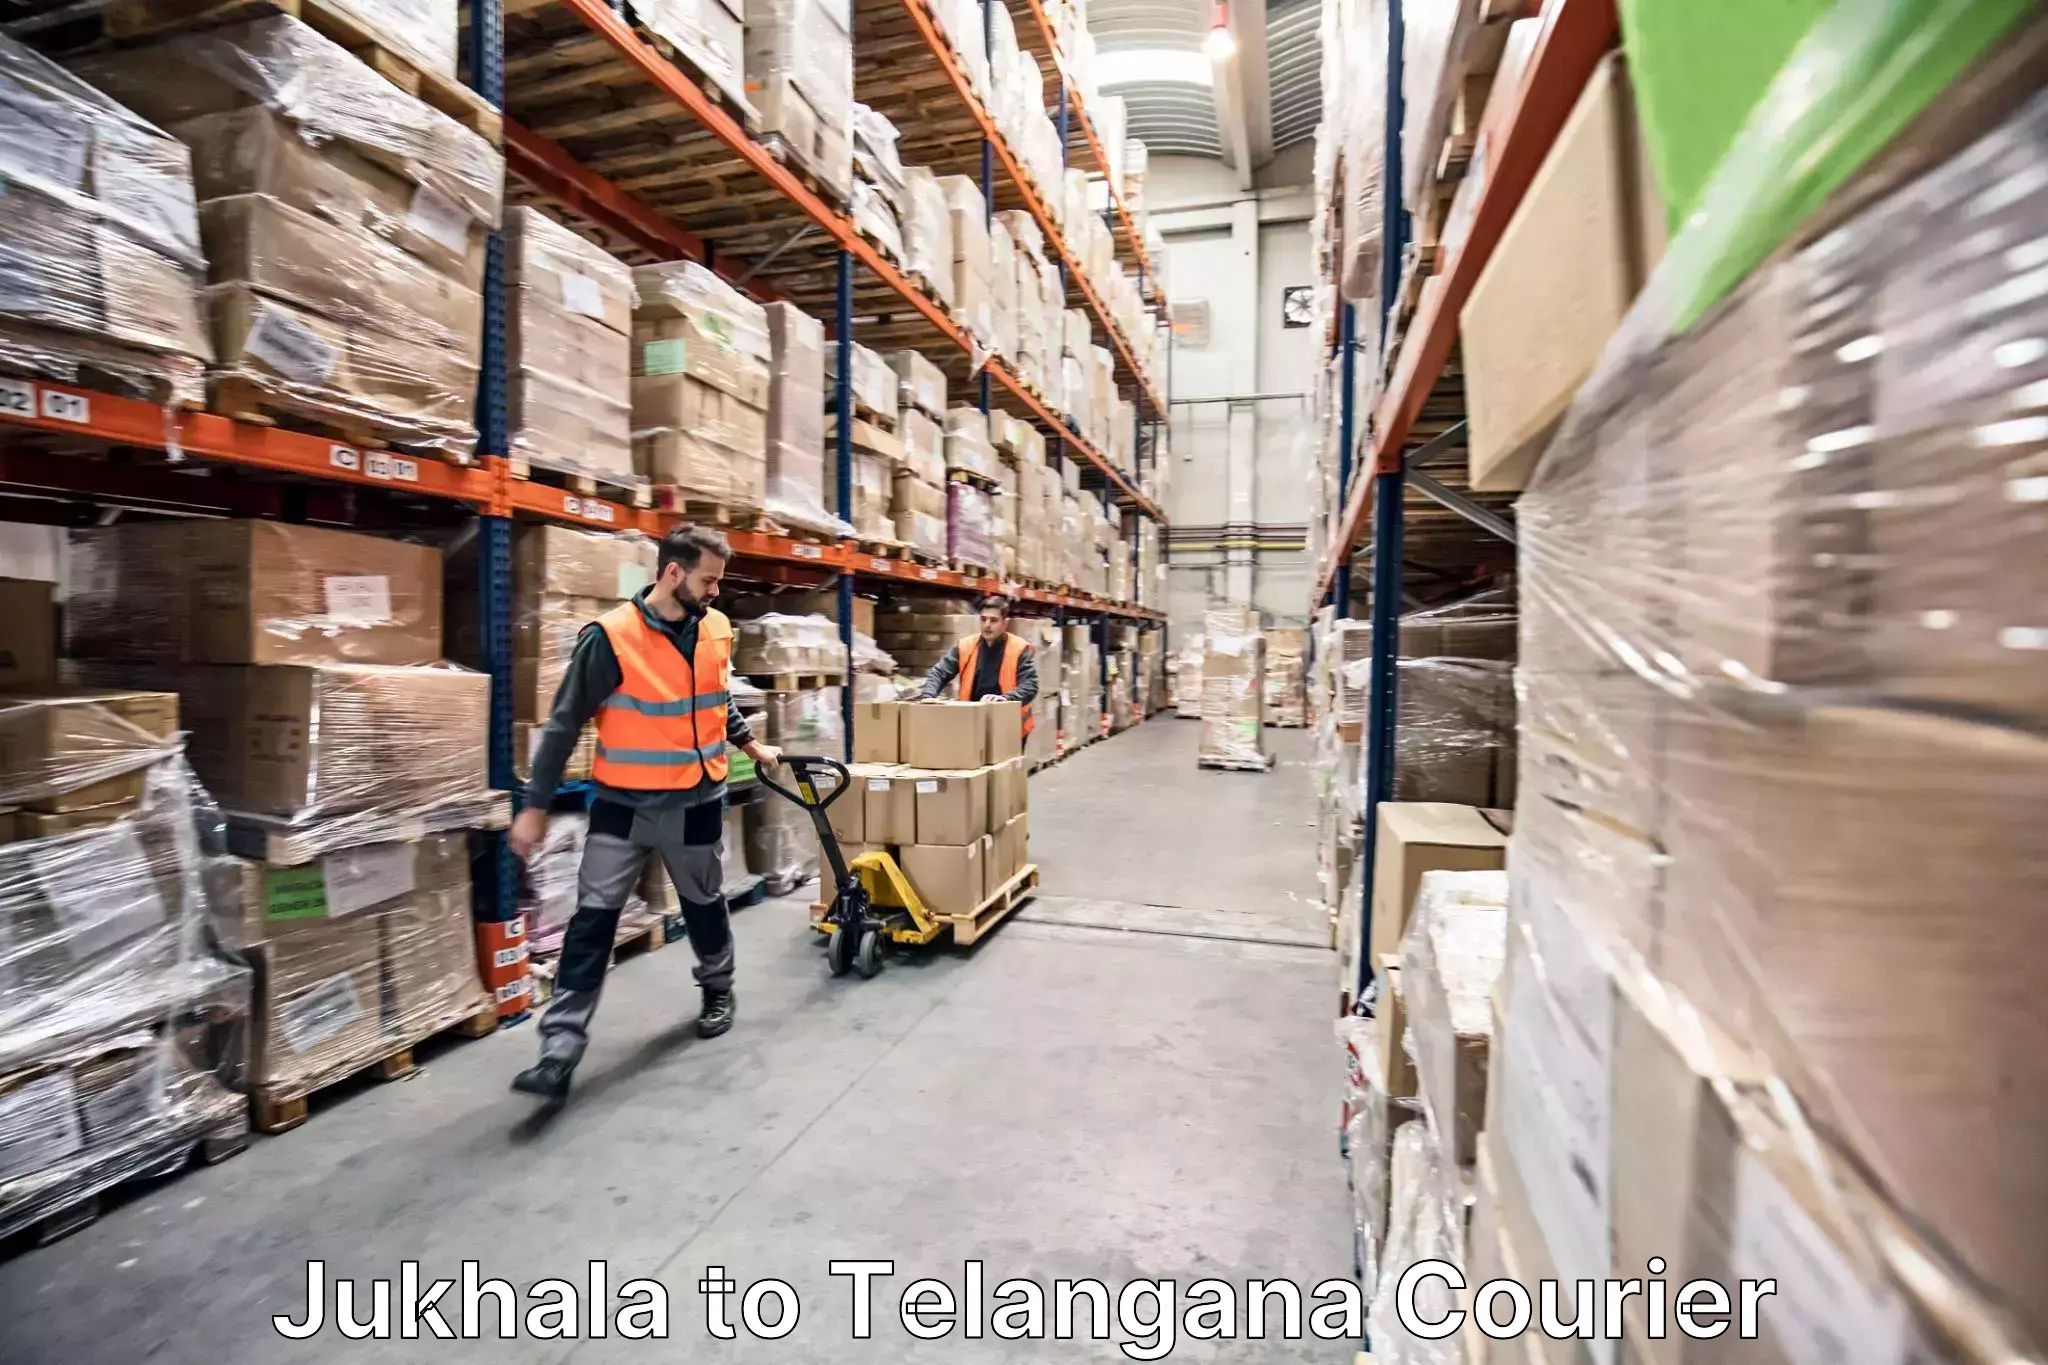 Quality moving company Jukhala to Tiryani